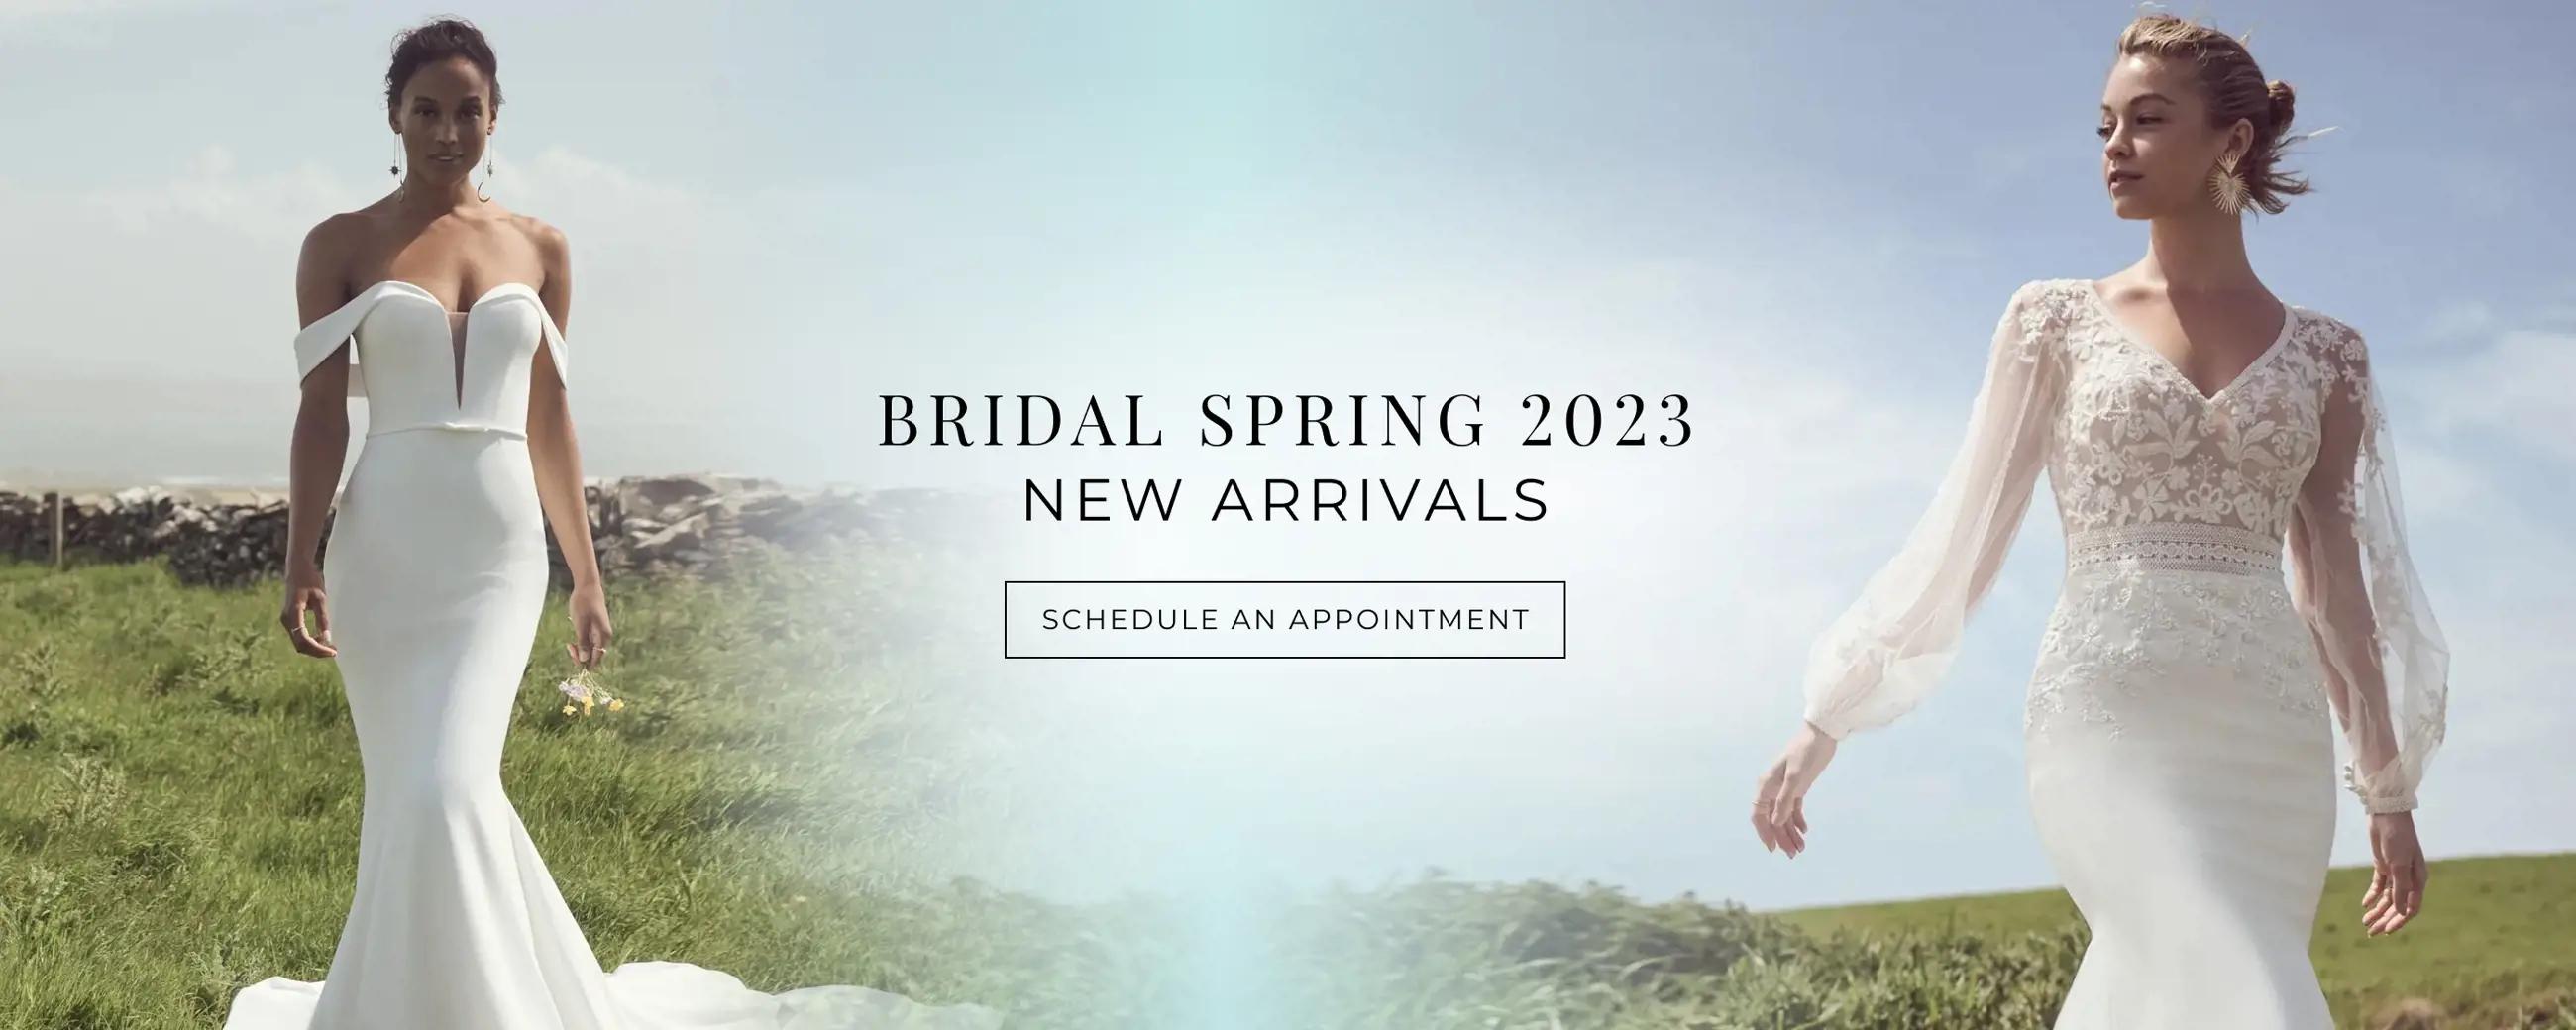 "Bridal Spring 2023" banner for desktop